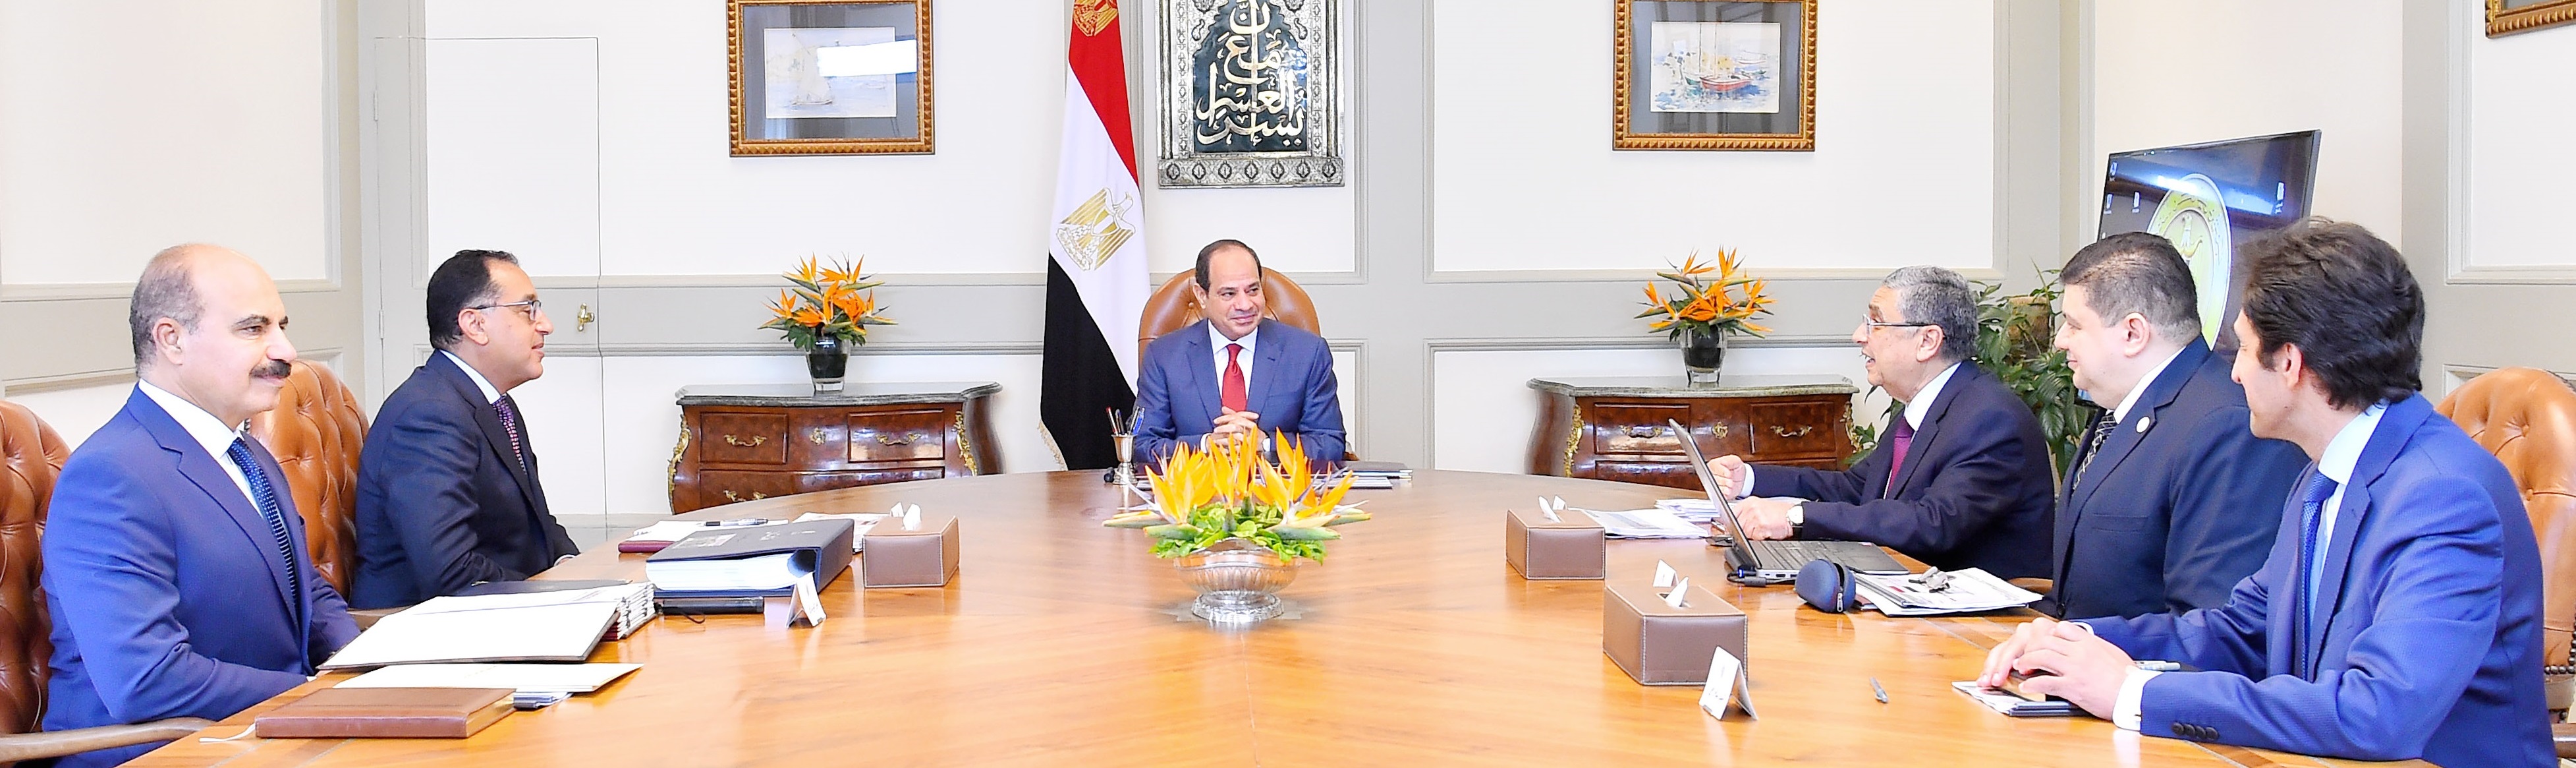   الرئيس السيسى يجتمع مع رئيس مجلس الوزراء ووزير الكهرباء